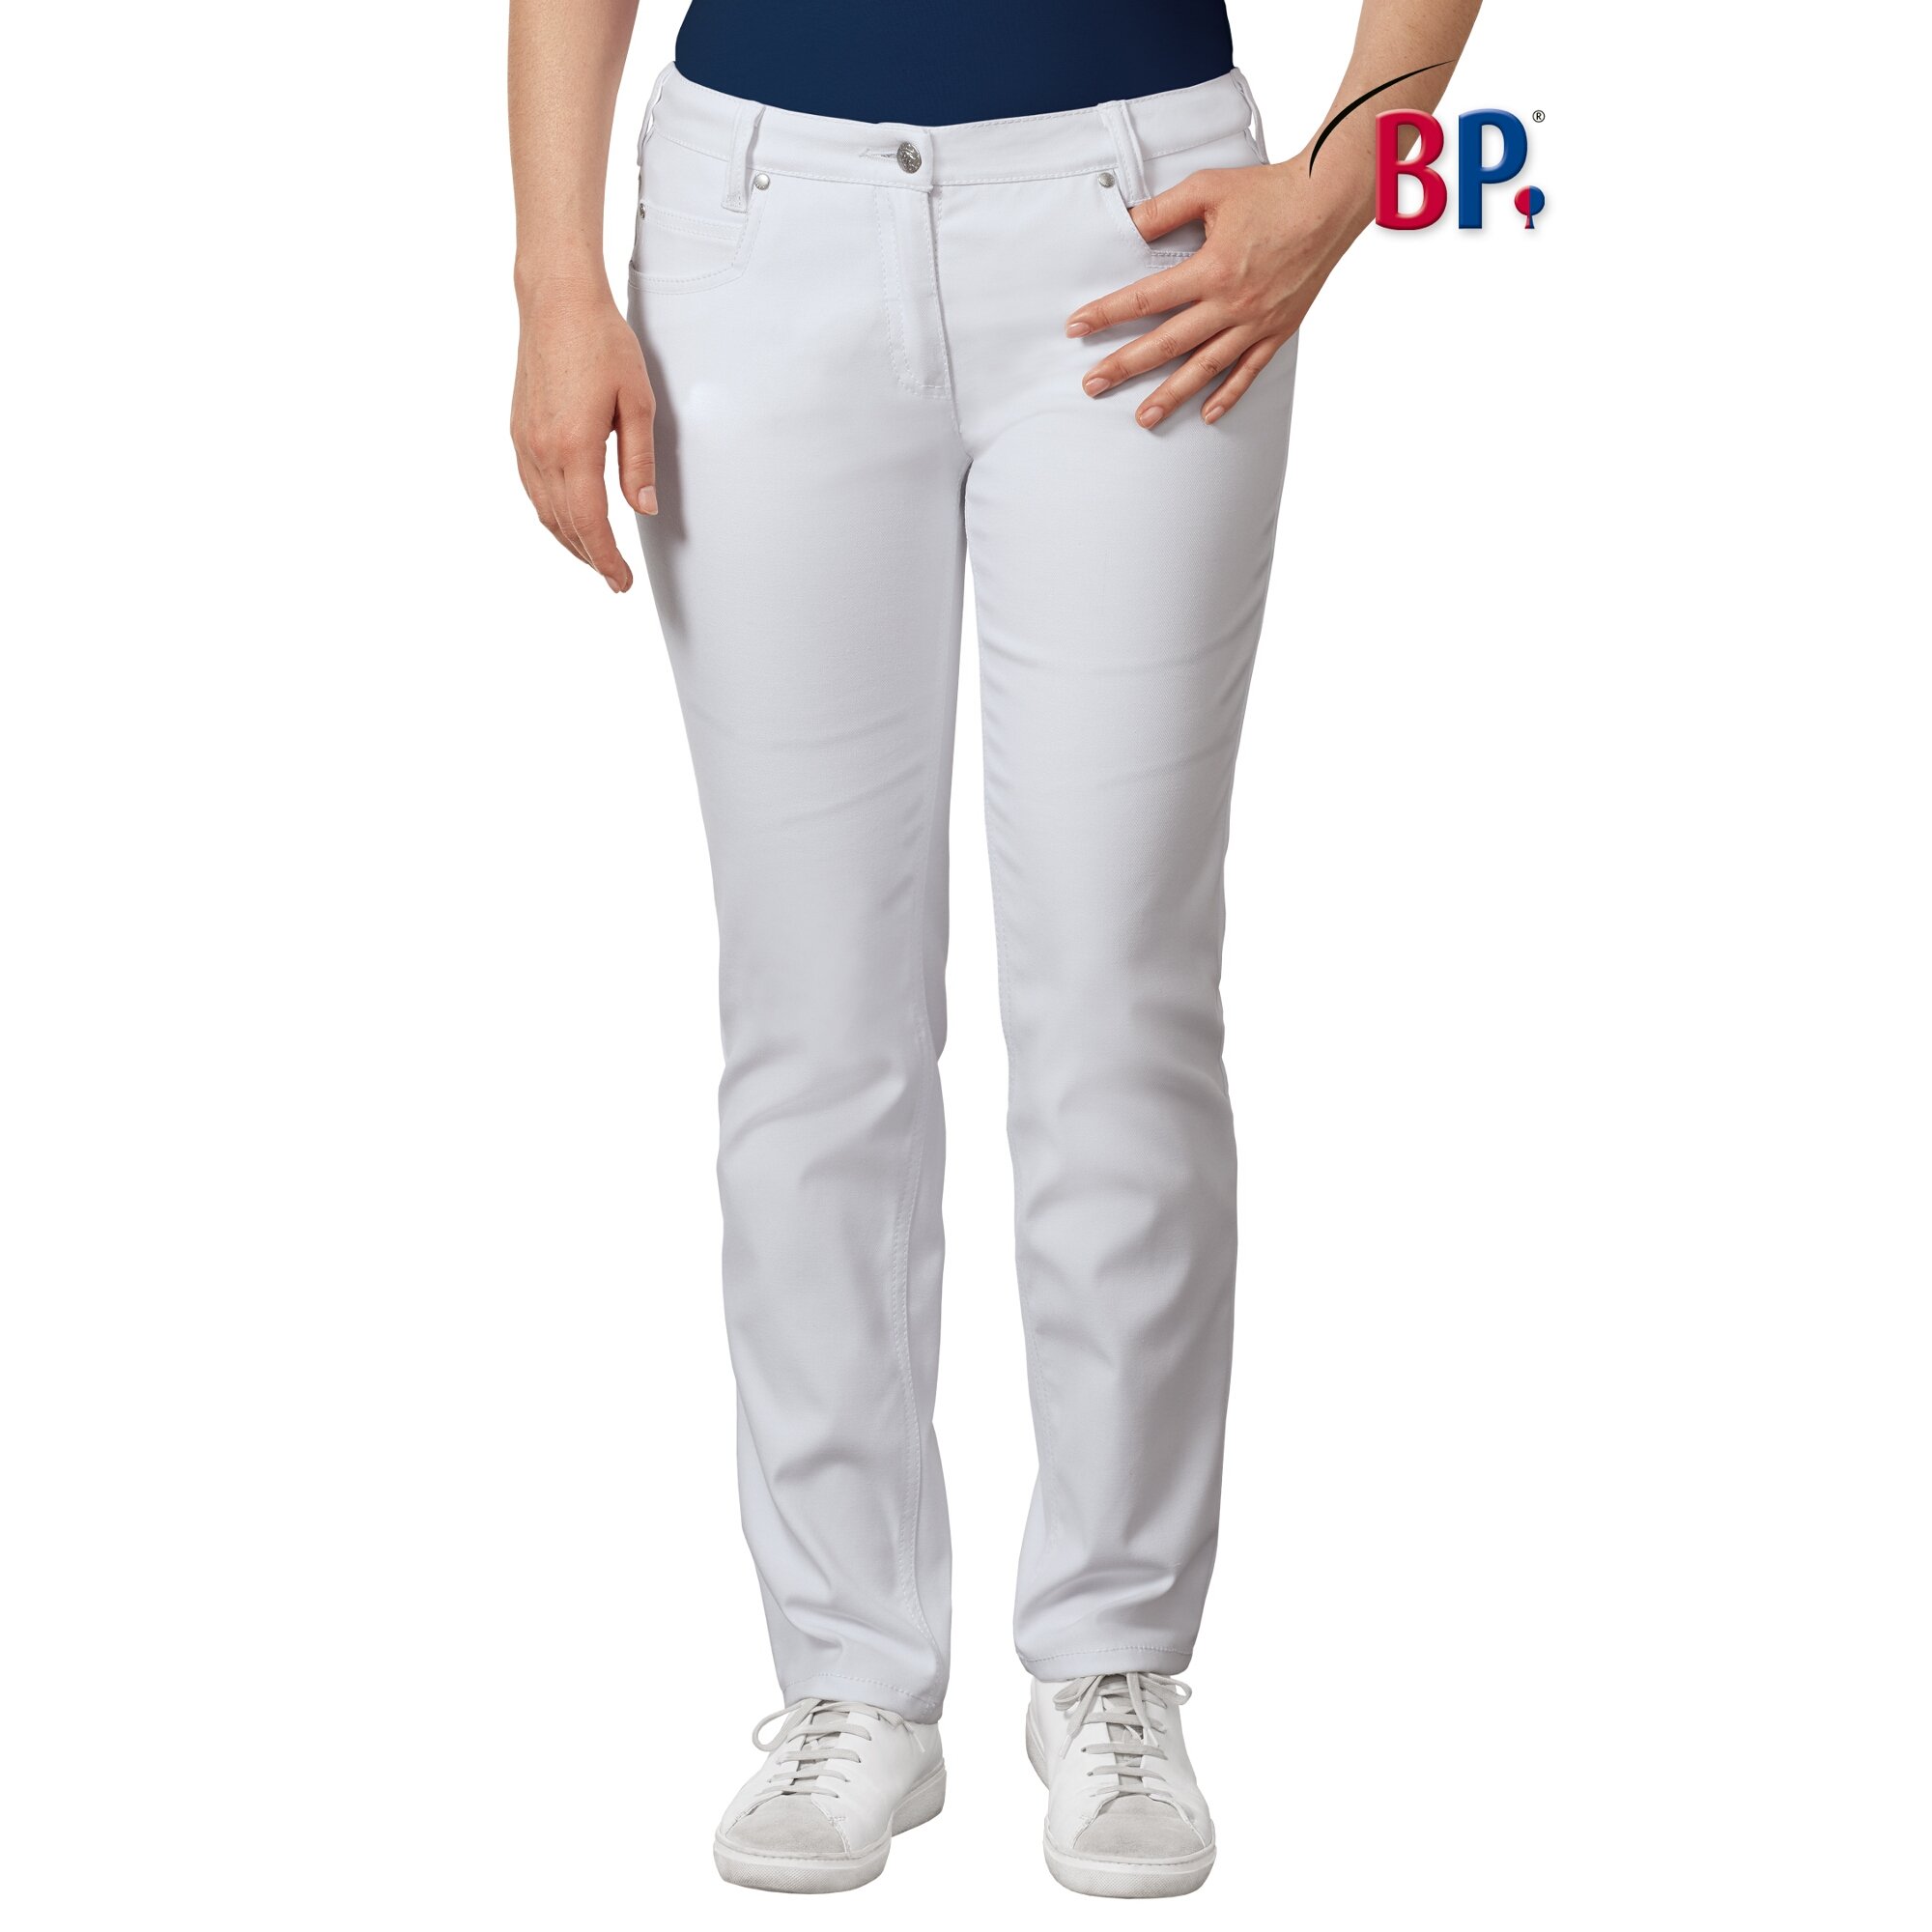 BP® Med-System Damen Jeanshose